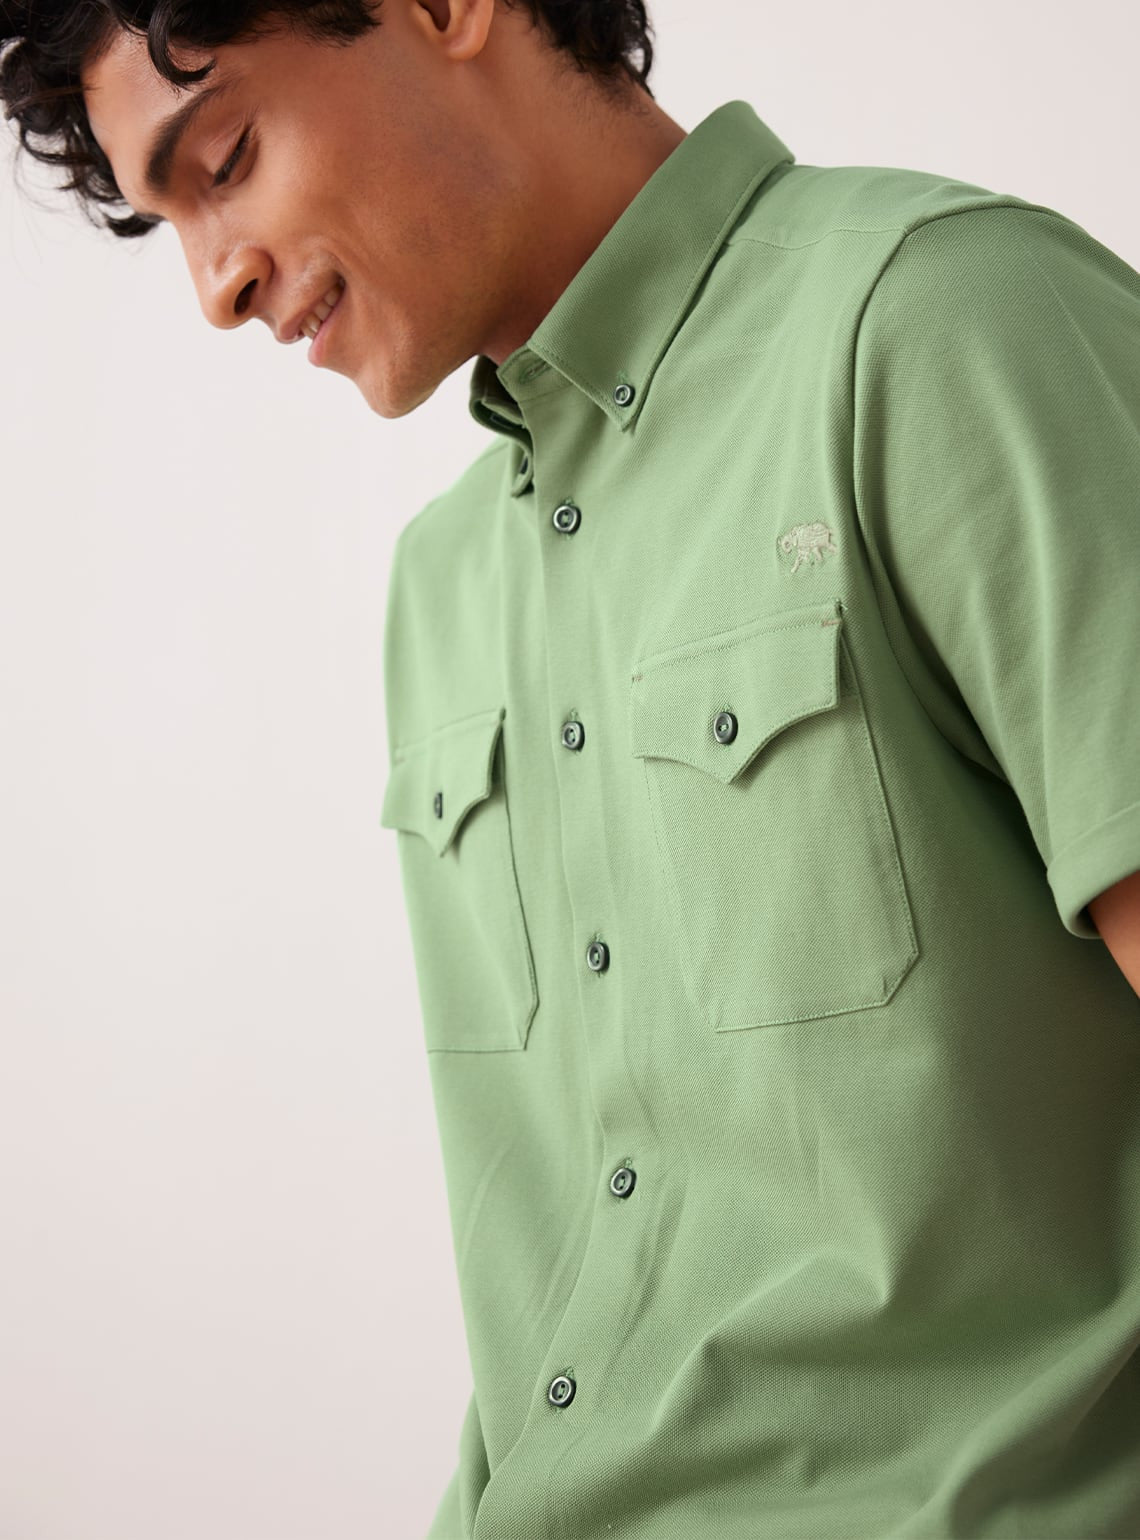 Buy Garden Knit Shirt  Semi casual Green Solids Shirts for Men